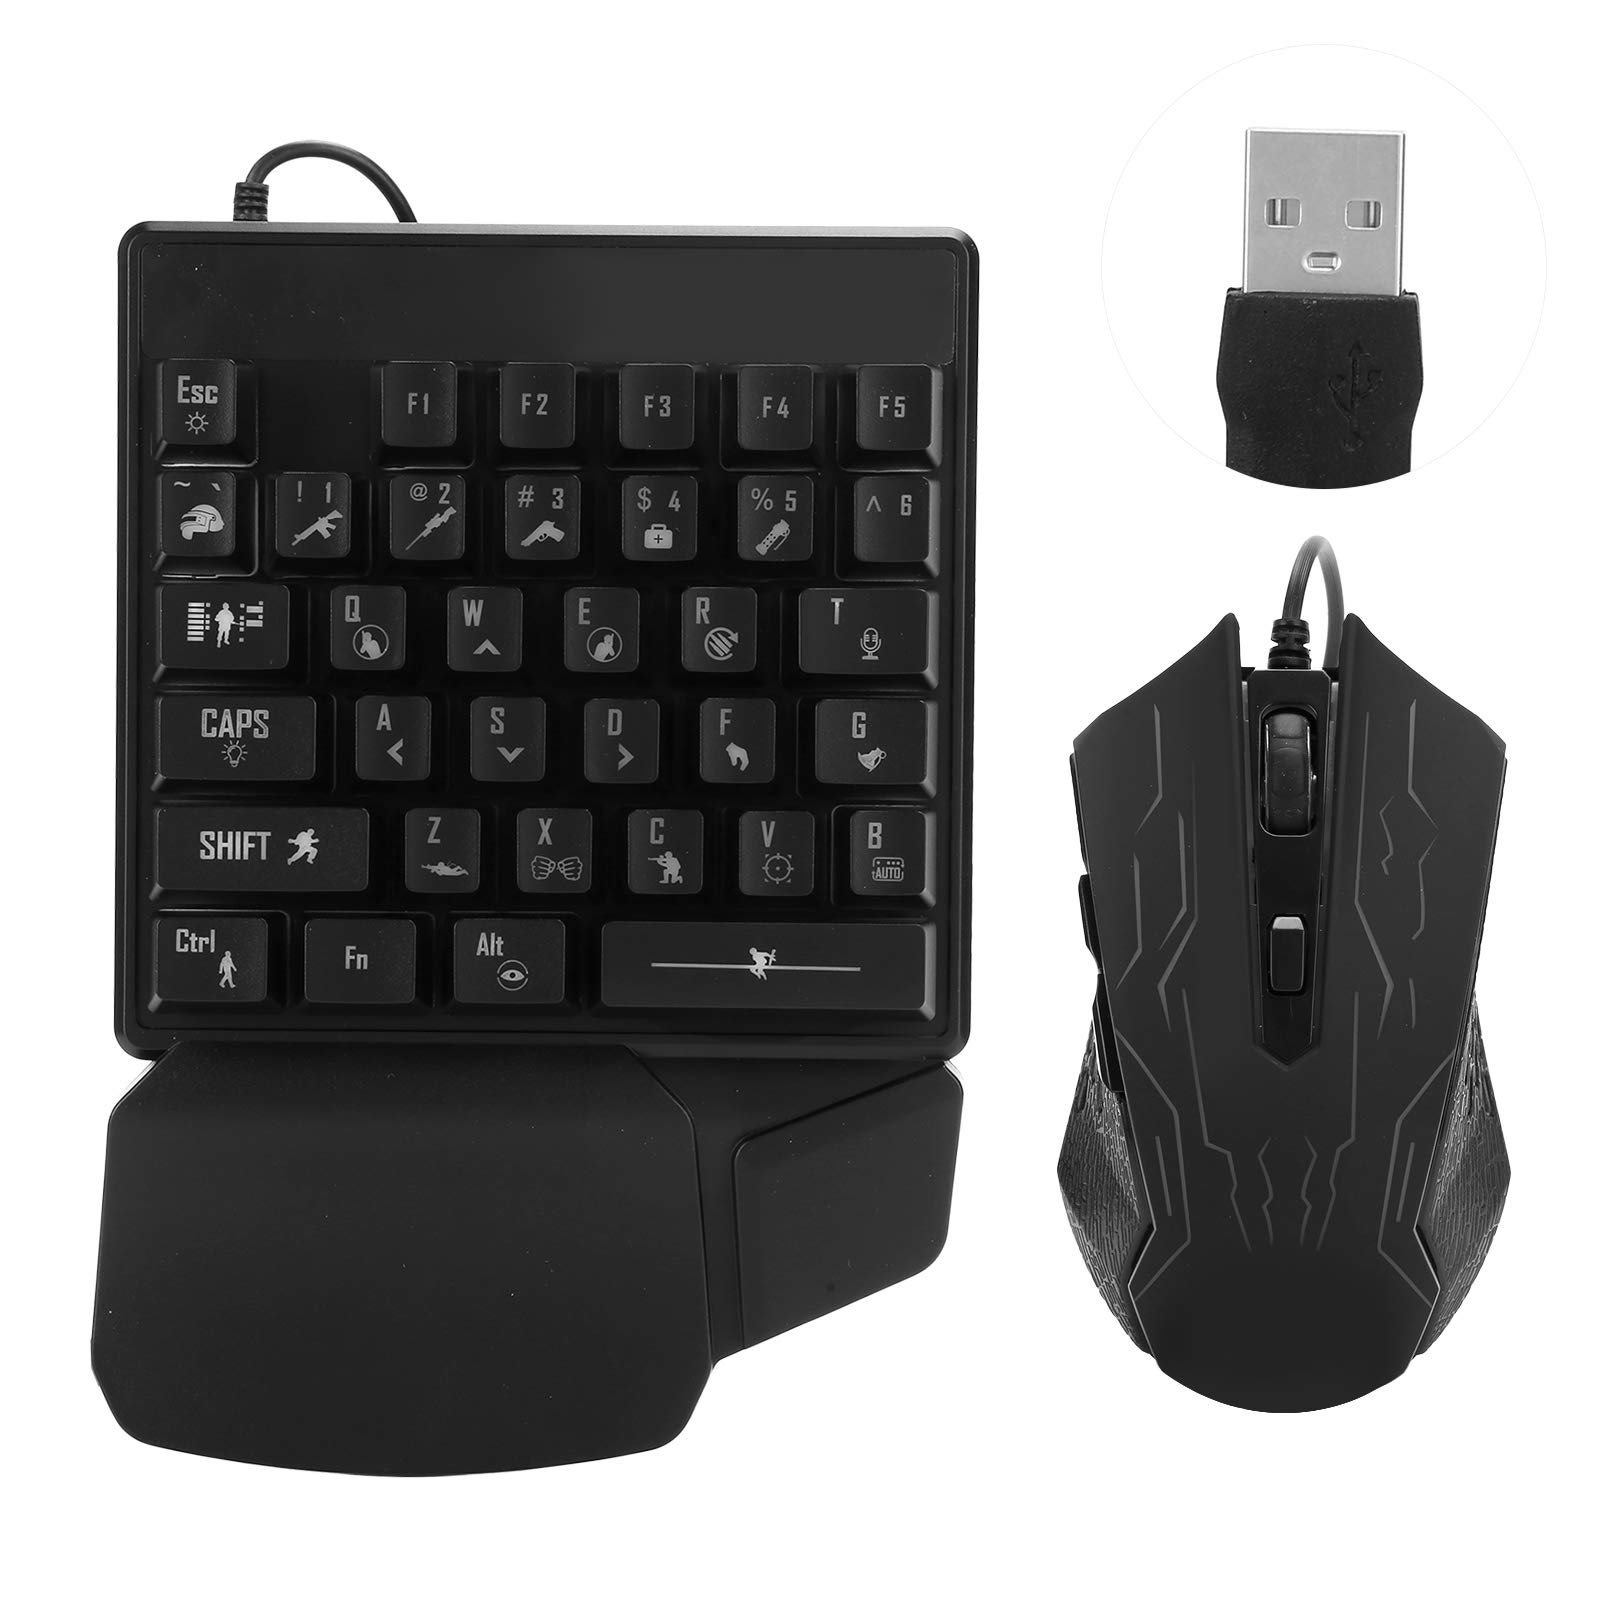 Goshyda Einhand-Tastatur-Mausset, Gaming-Tastatur, Manipulatorgefühl, für E-Sport, Universal-Computerzubehör, ergonomische Handauflage, 35 Tasten, 7-Farben-Hintergrundbeleuchtung